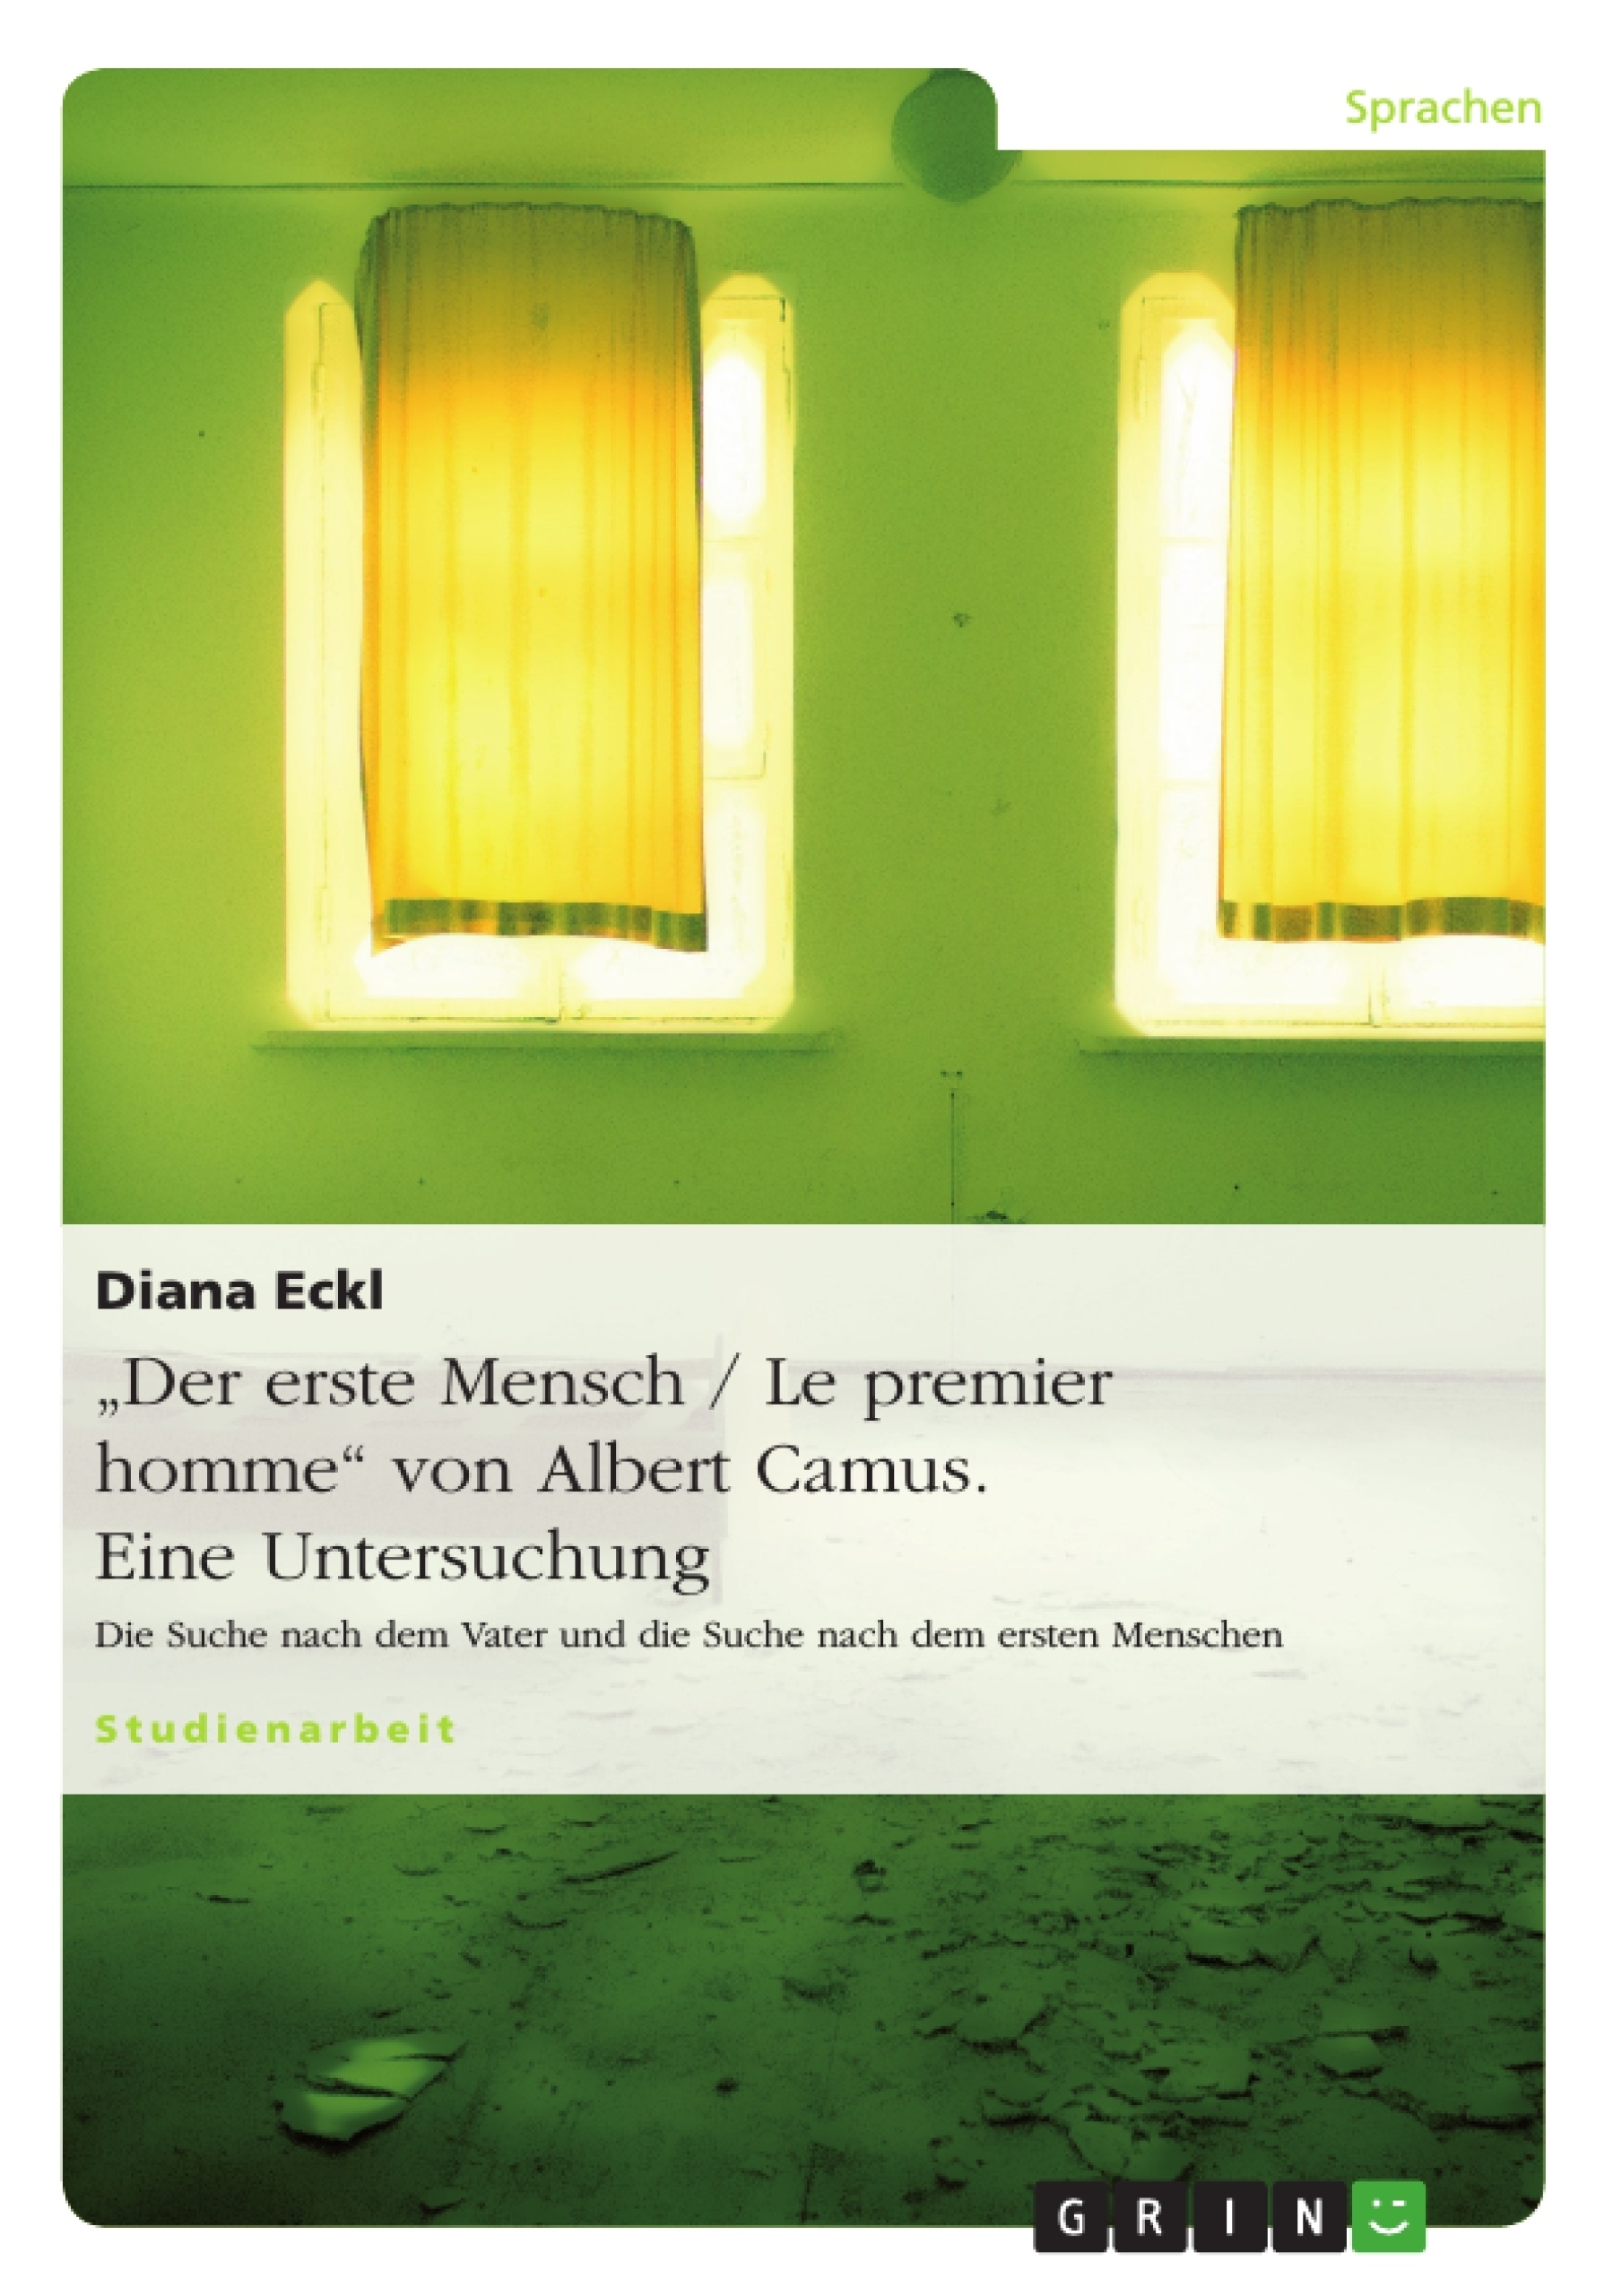 Titre: "Der erste Mensch / Le premier homme" von Albert Camus. Eine Untersuchung